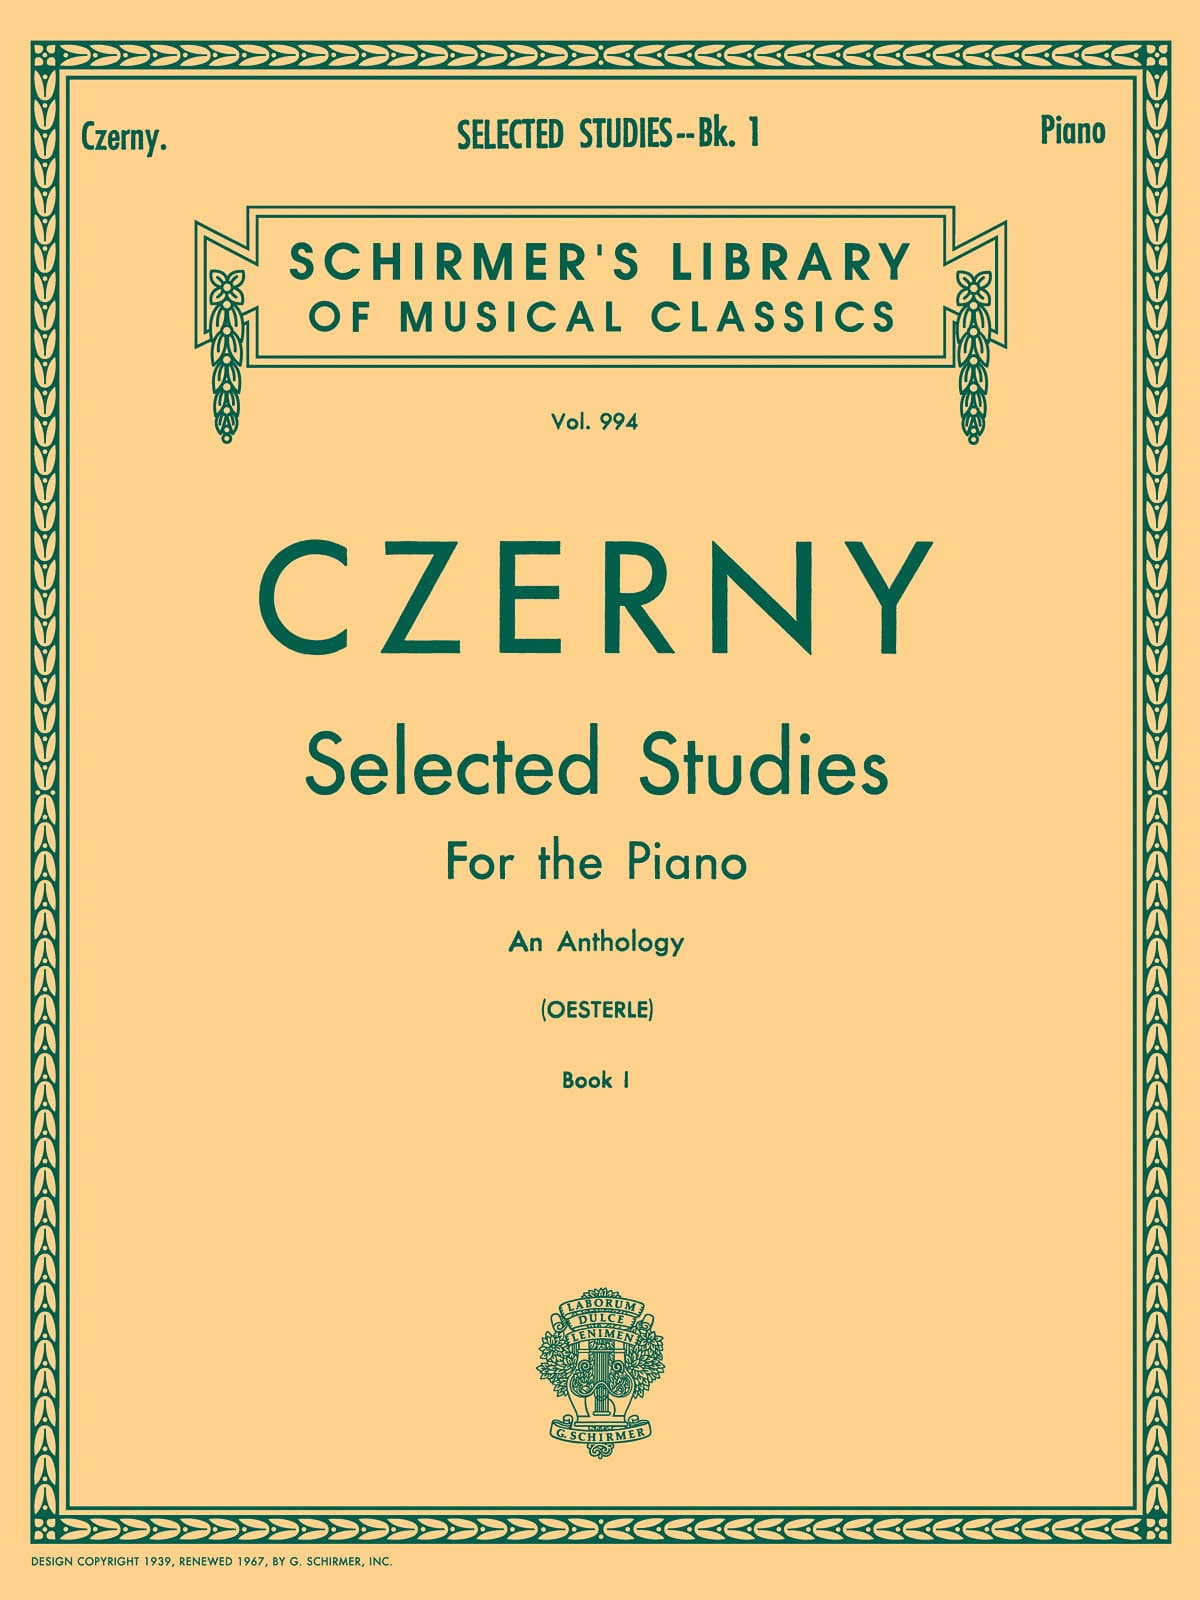 SCHIRMER CZERNY CARL - SELECTED STUDIES VOL.1 - PIANO